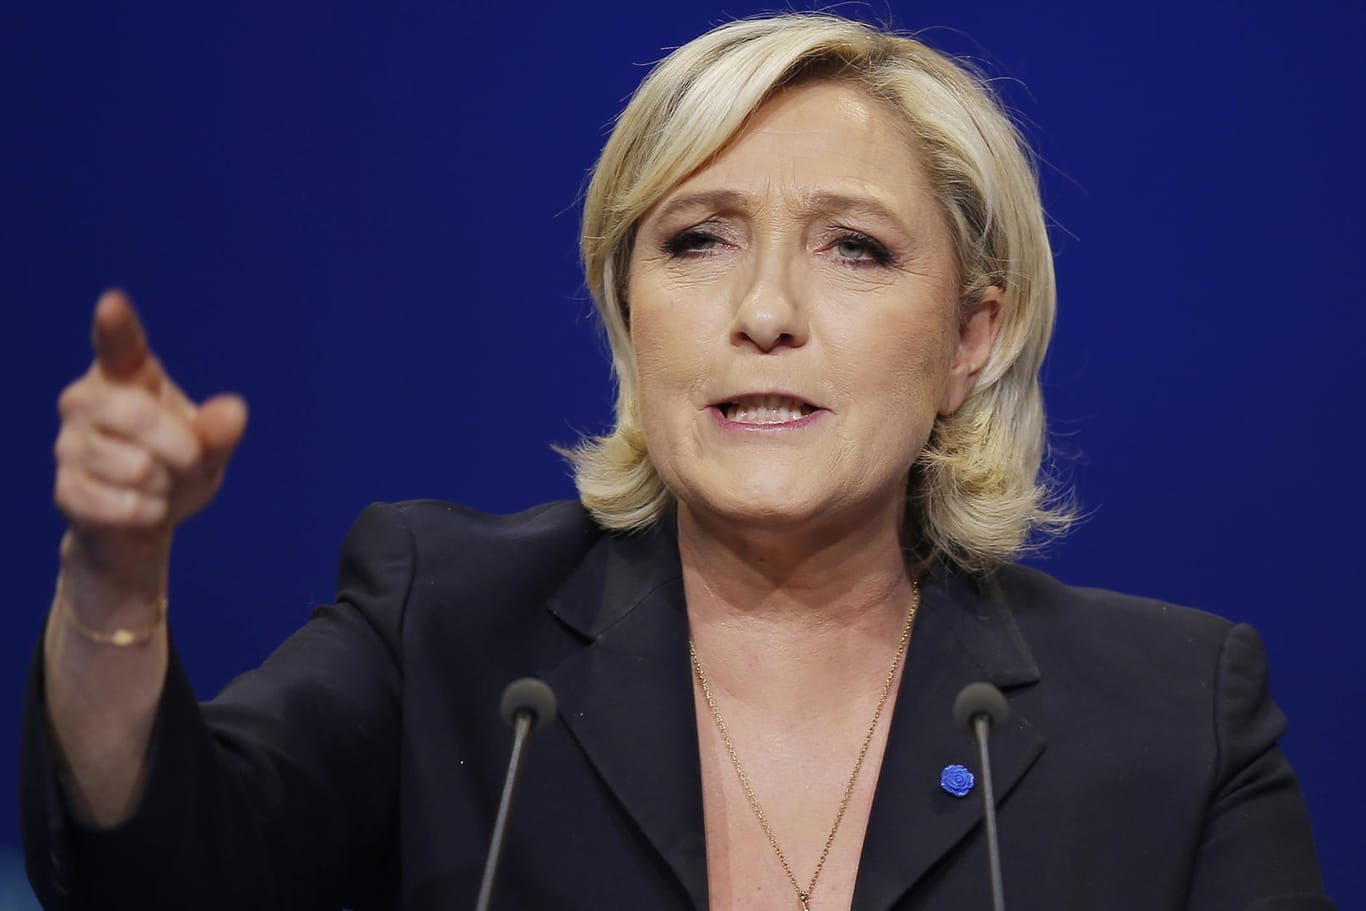 Die Präsidentschaftskandidatin des Front National, Marine Le Pen, gilt als islamkritisch und möchte Frankreich aus der EU führen.